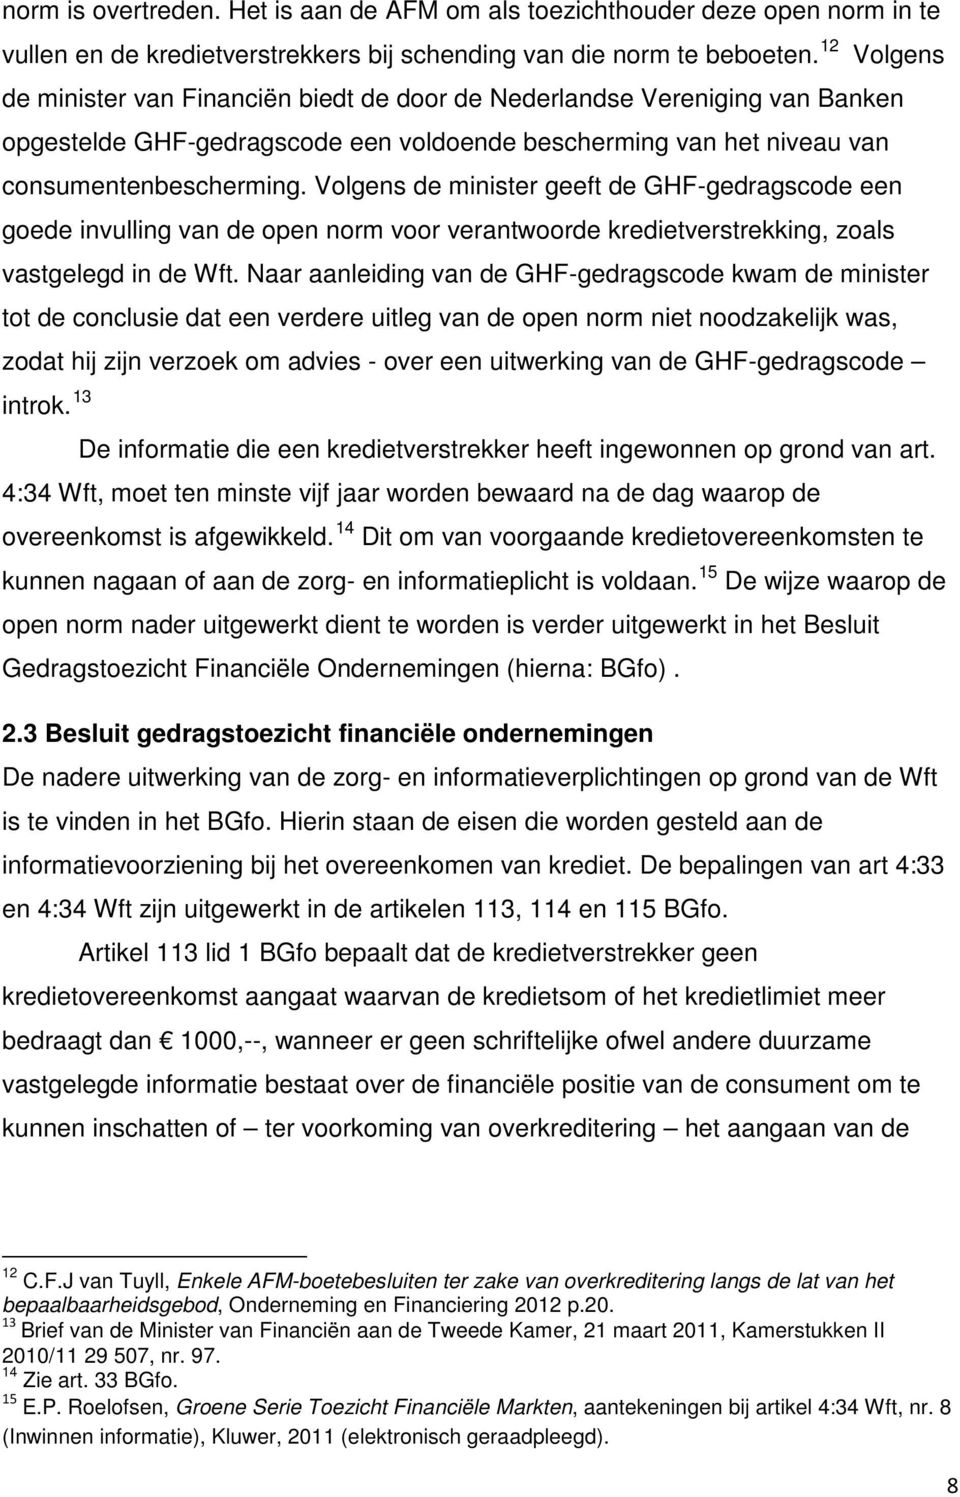 12 Volgens de minister van Financiën biedt de door de Nederlandse Vereniging van Banken opgestelde GHF-gedragscode een voldoende bescherming van het niveau van consumentenbescherming.